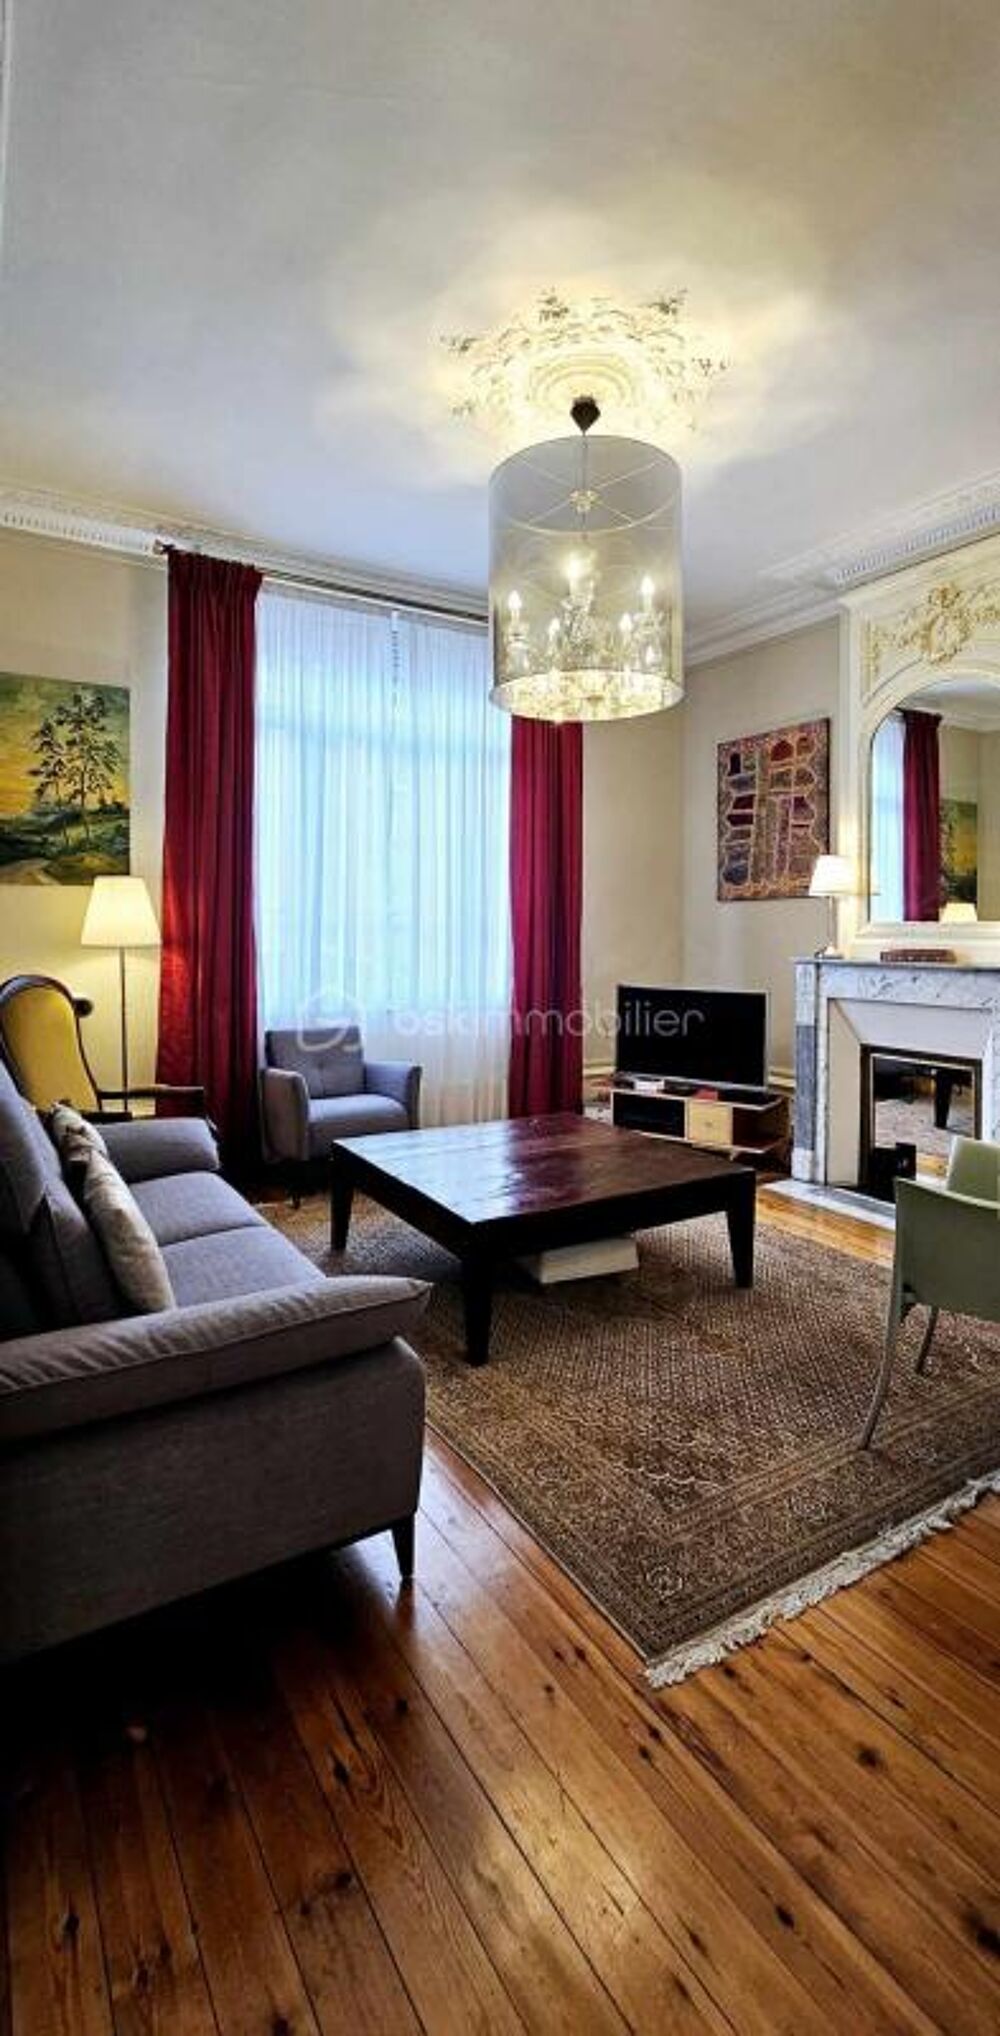 Vente Proprit/Chteau A vendre, sur Amiens, belle demeure familiale compose de 7 chambres avec garage et extrieur Amiens